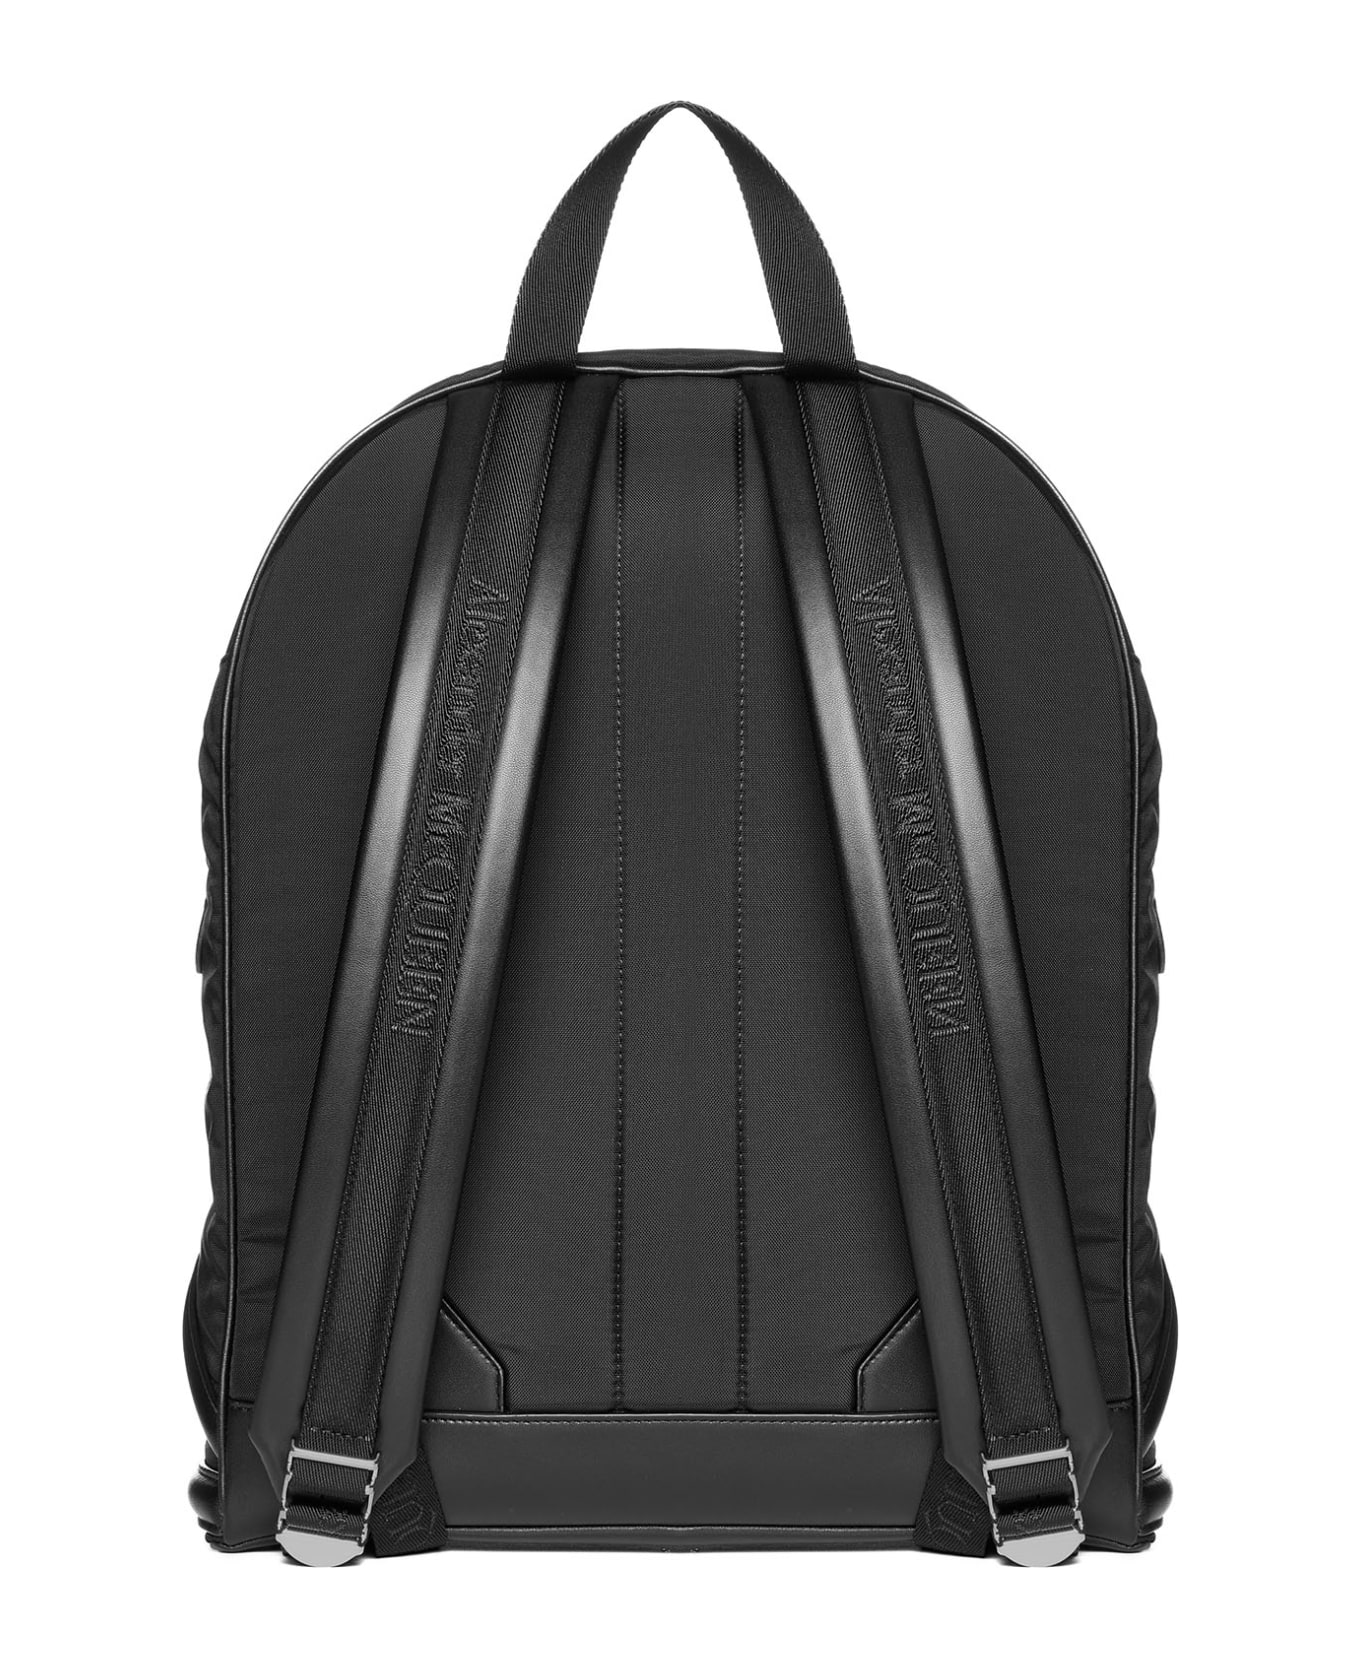 Alexander McQueen Harness Backpack - black